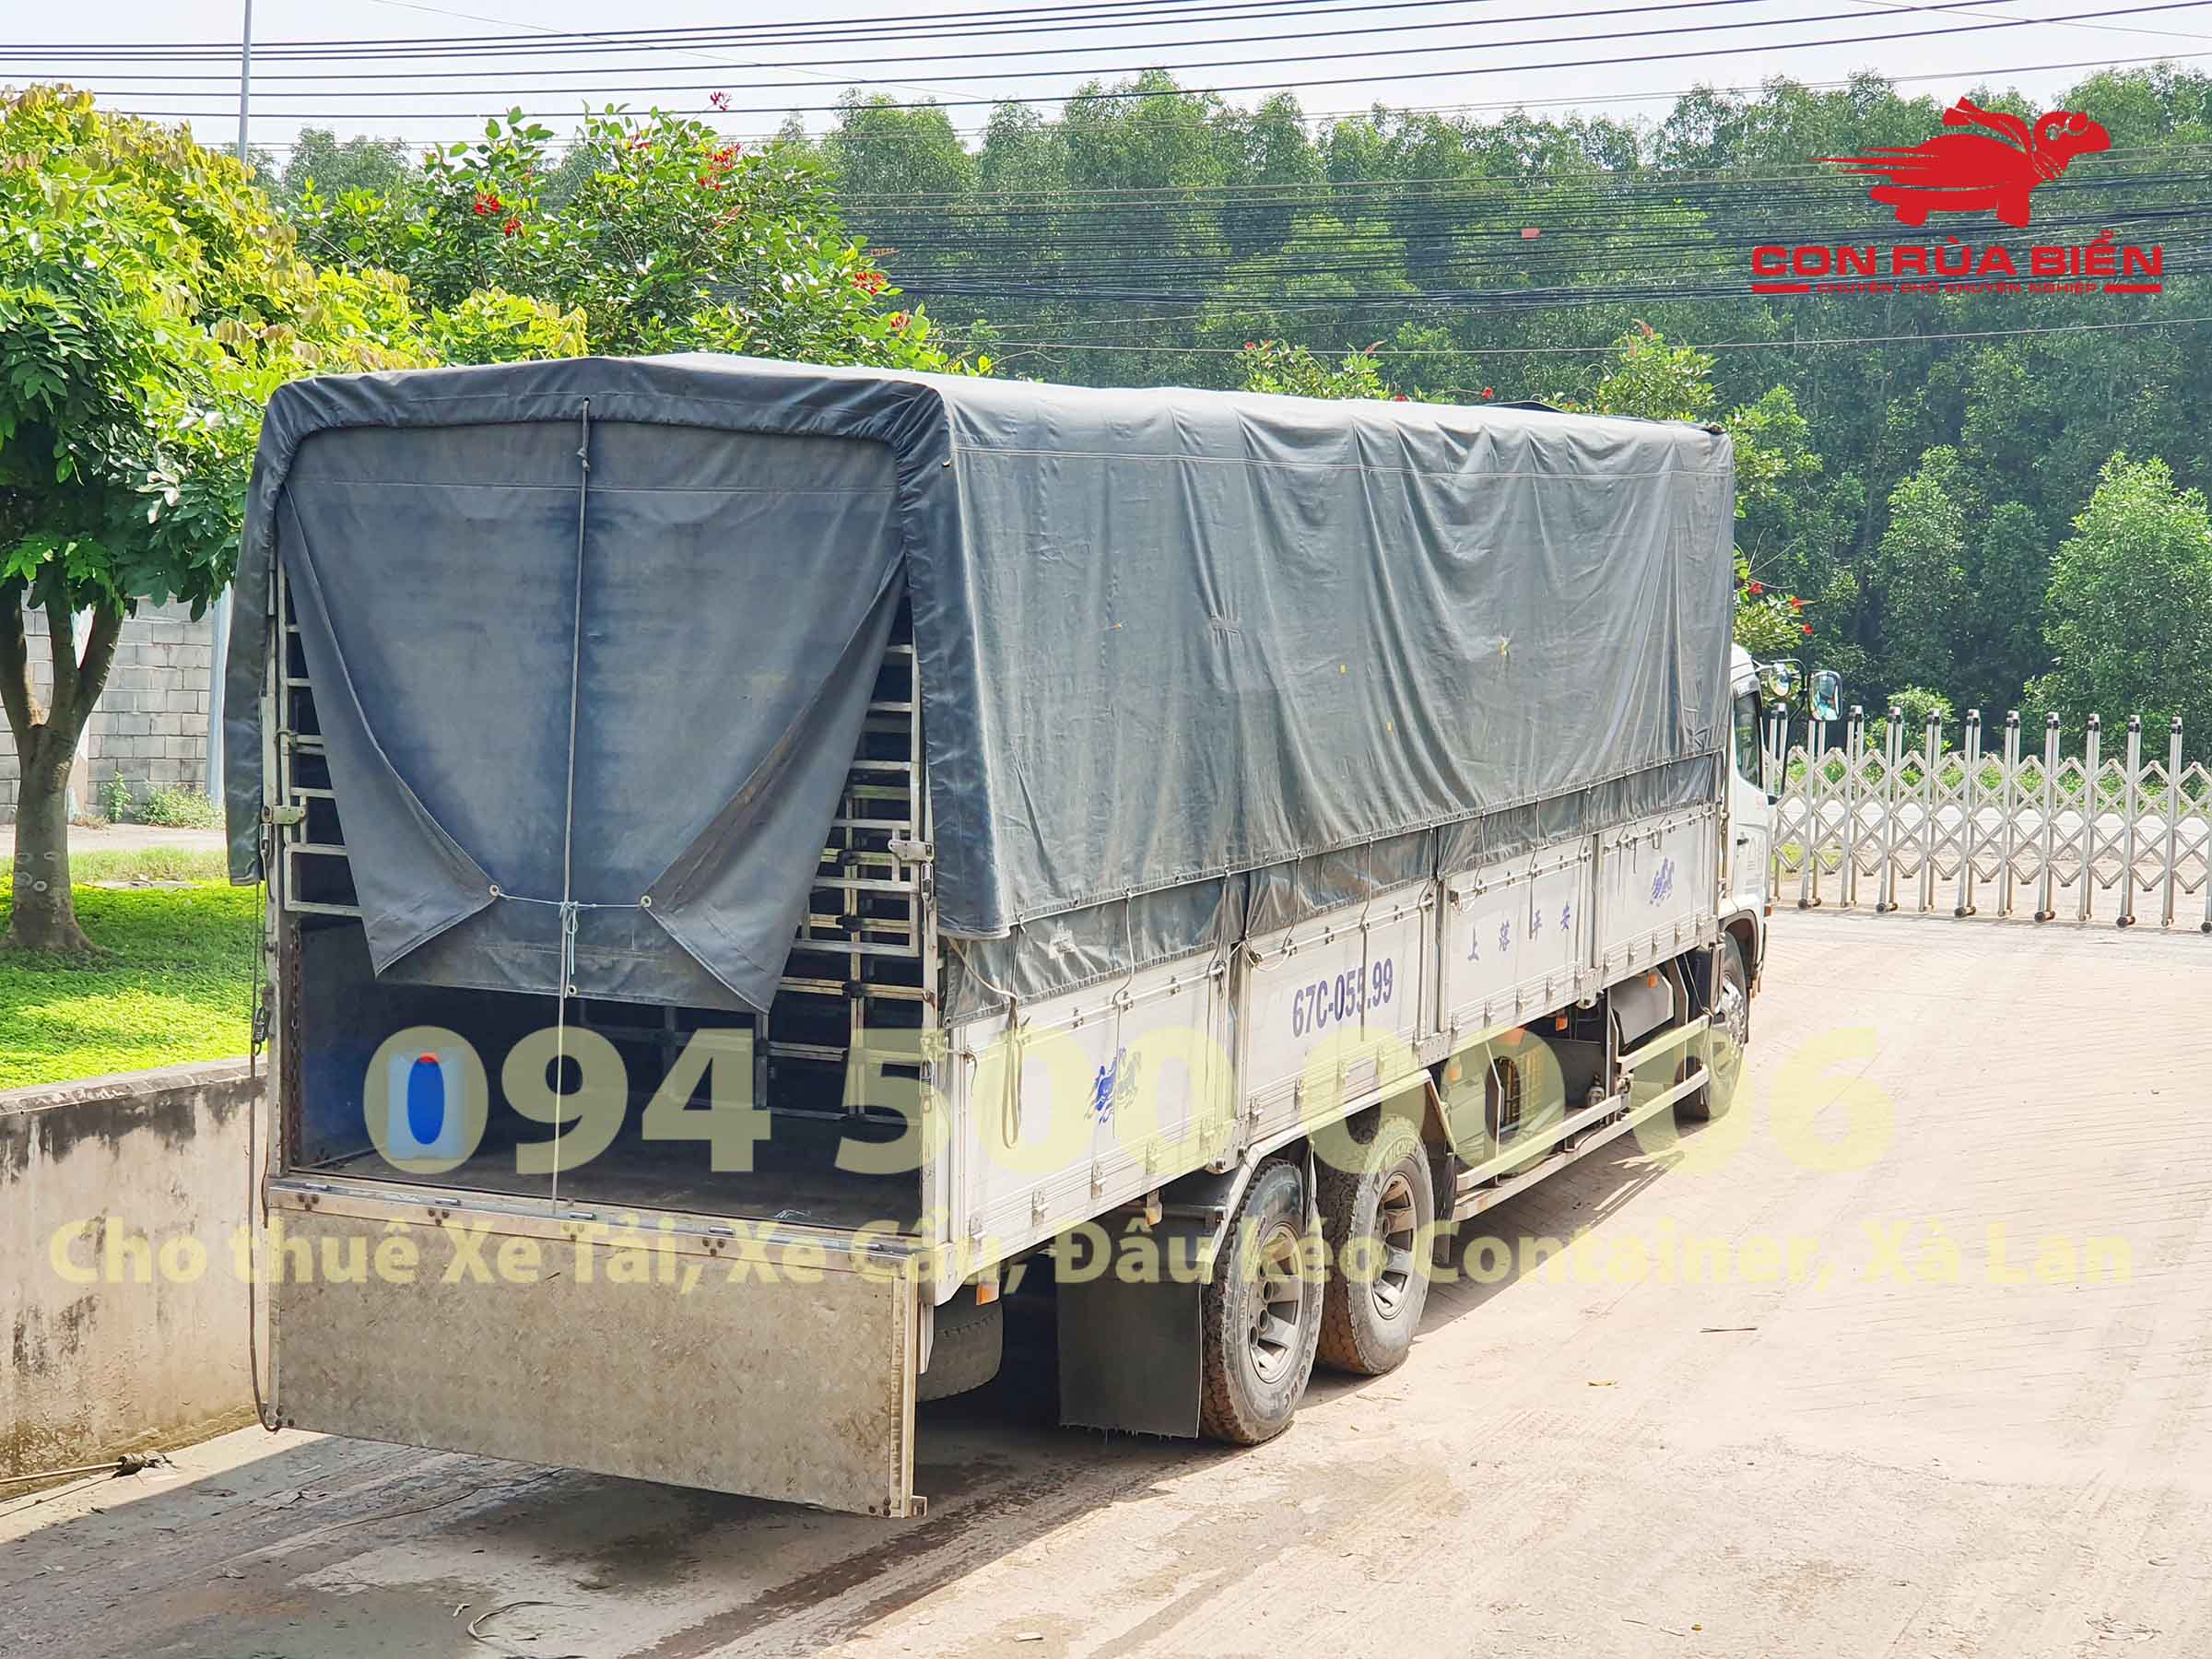 Dự án Vận chuyển Sắt thép đi Phú Quốc tại Chành xe Hà Nội - Đà Nẵng - Sài Gòn - Phú Quốc ở CON RÙA BIỂN